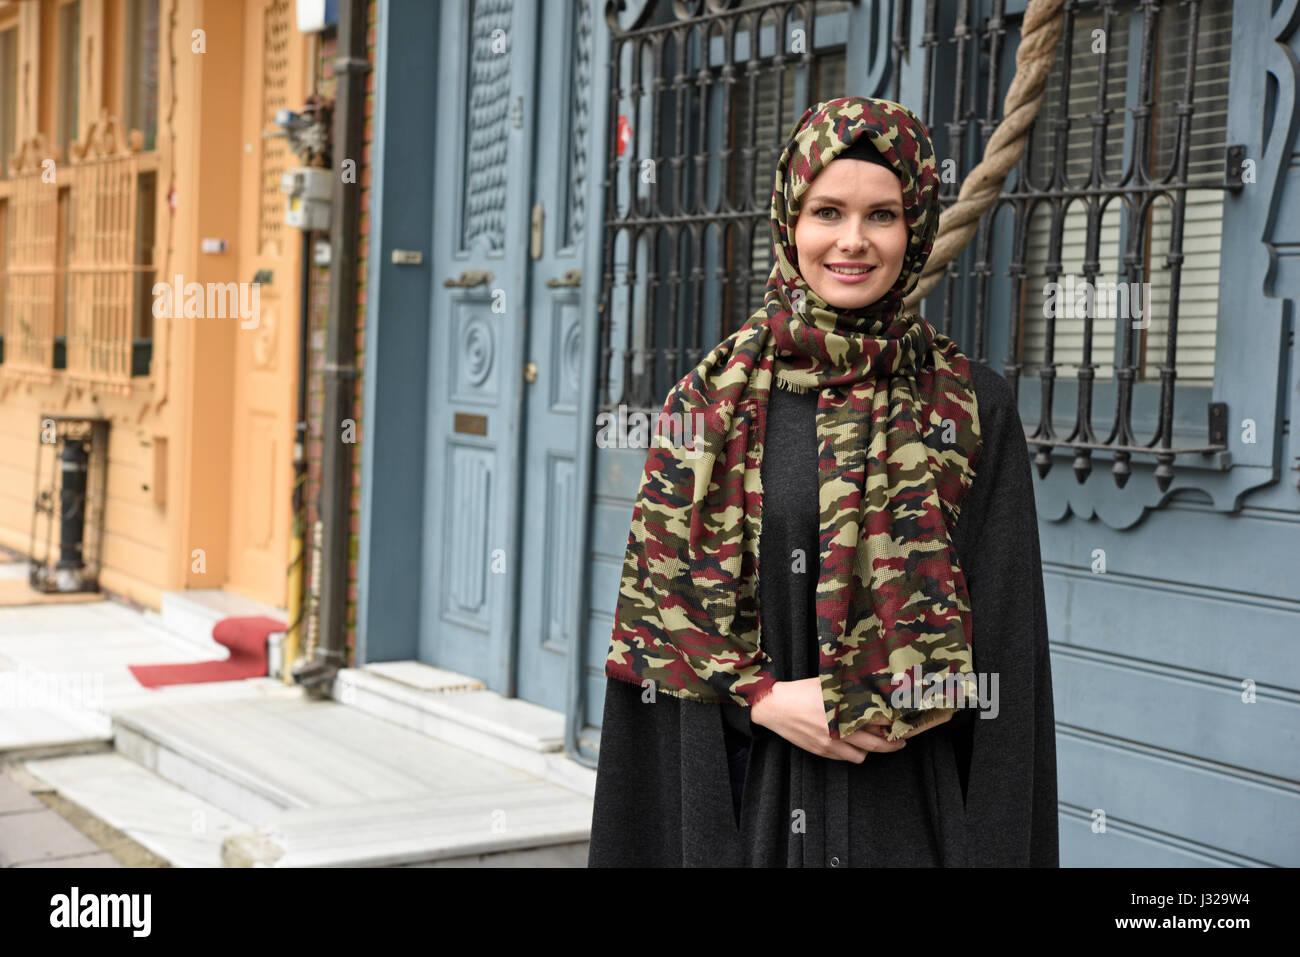 junge muslimische Frau tragen islamischen Kleidung Stockfoto